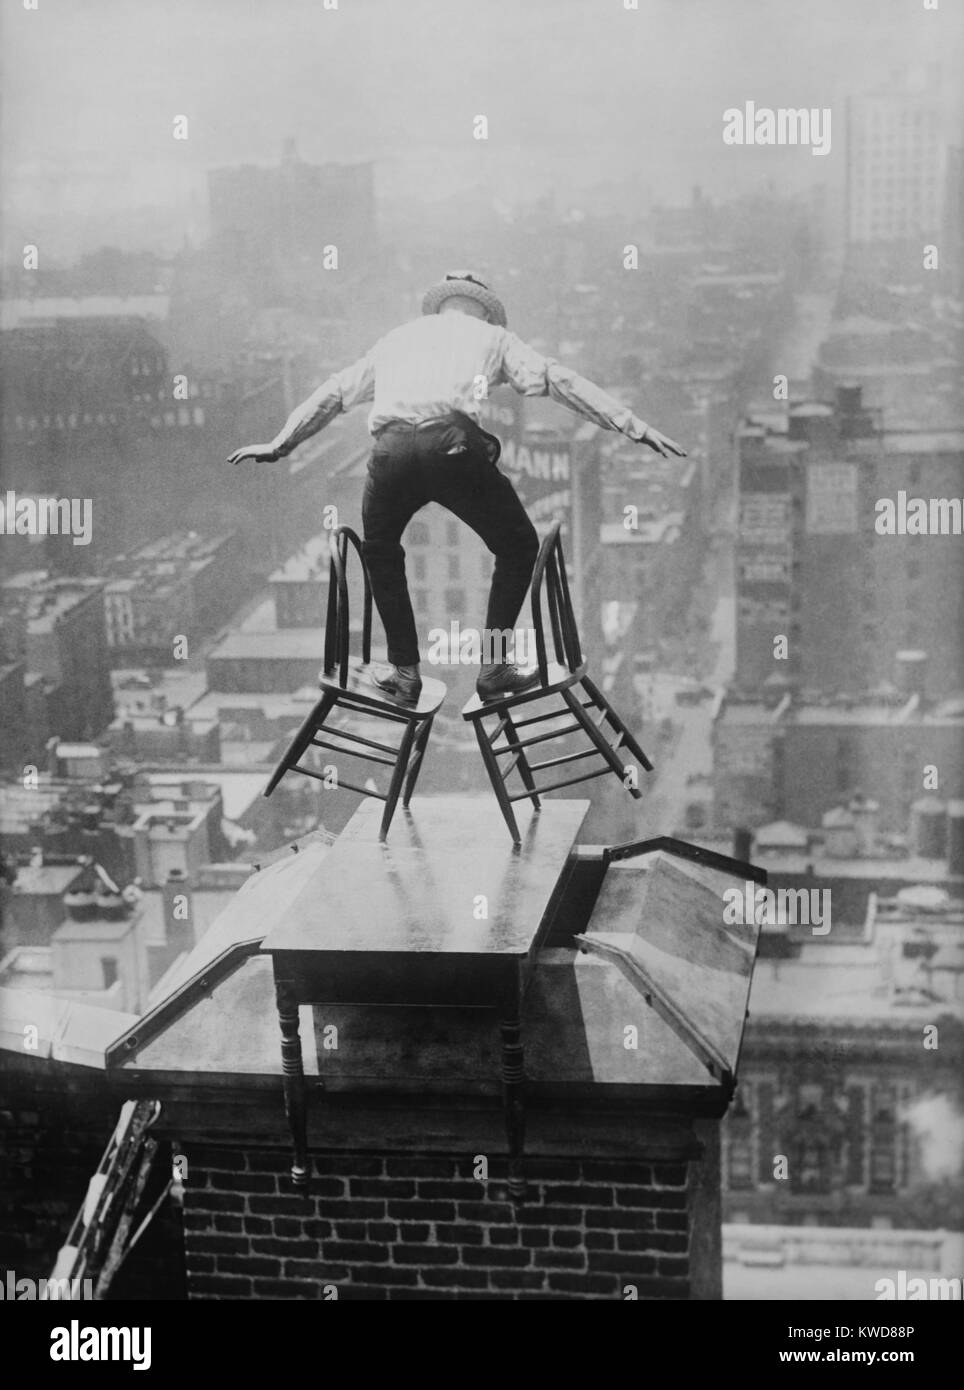 "Menschliche Fliegen 'John' Jammie "Reynolds Salden geneigt, der unsicher auf zwei Stühlen. Das dare-devil ist auf dem Dach von einem hohen Gebäude in Manhattan, auf eine Tabelle über einen Schornstein platziert thront. Ca. 1915-1920. (BSLOC 2015 17 170) Stockfoto